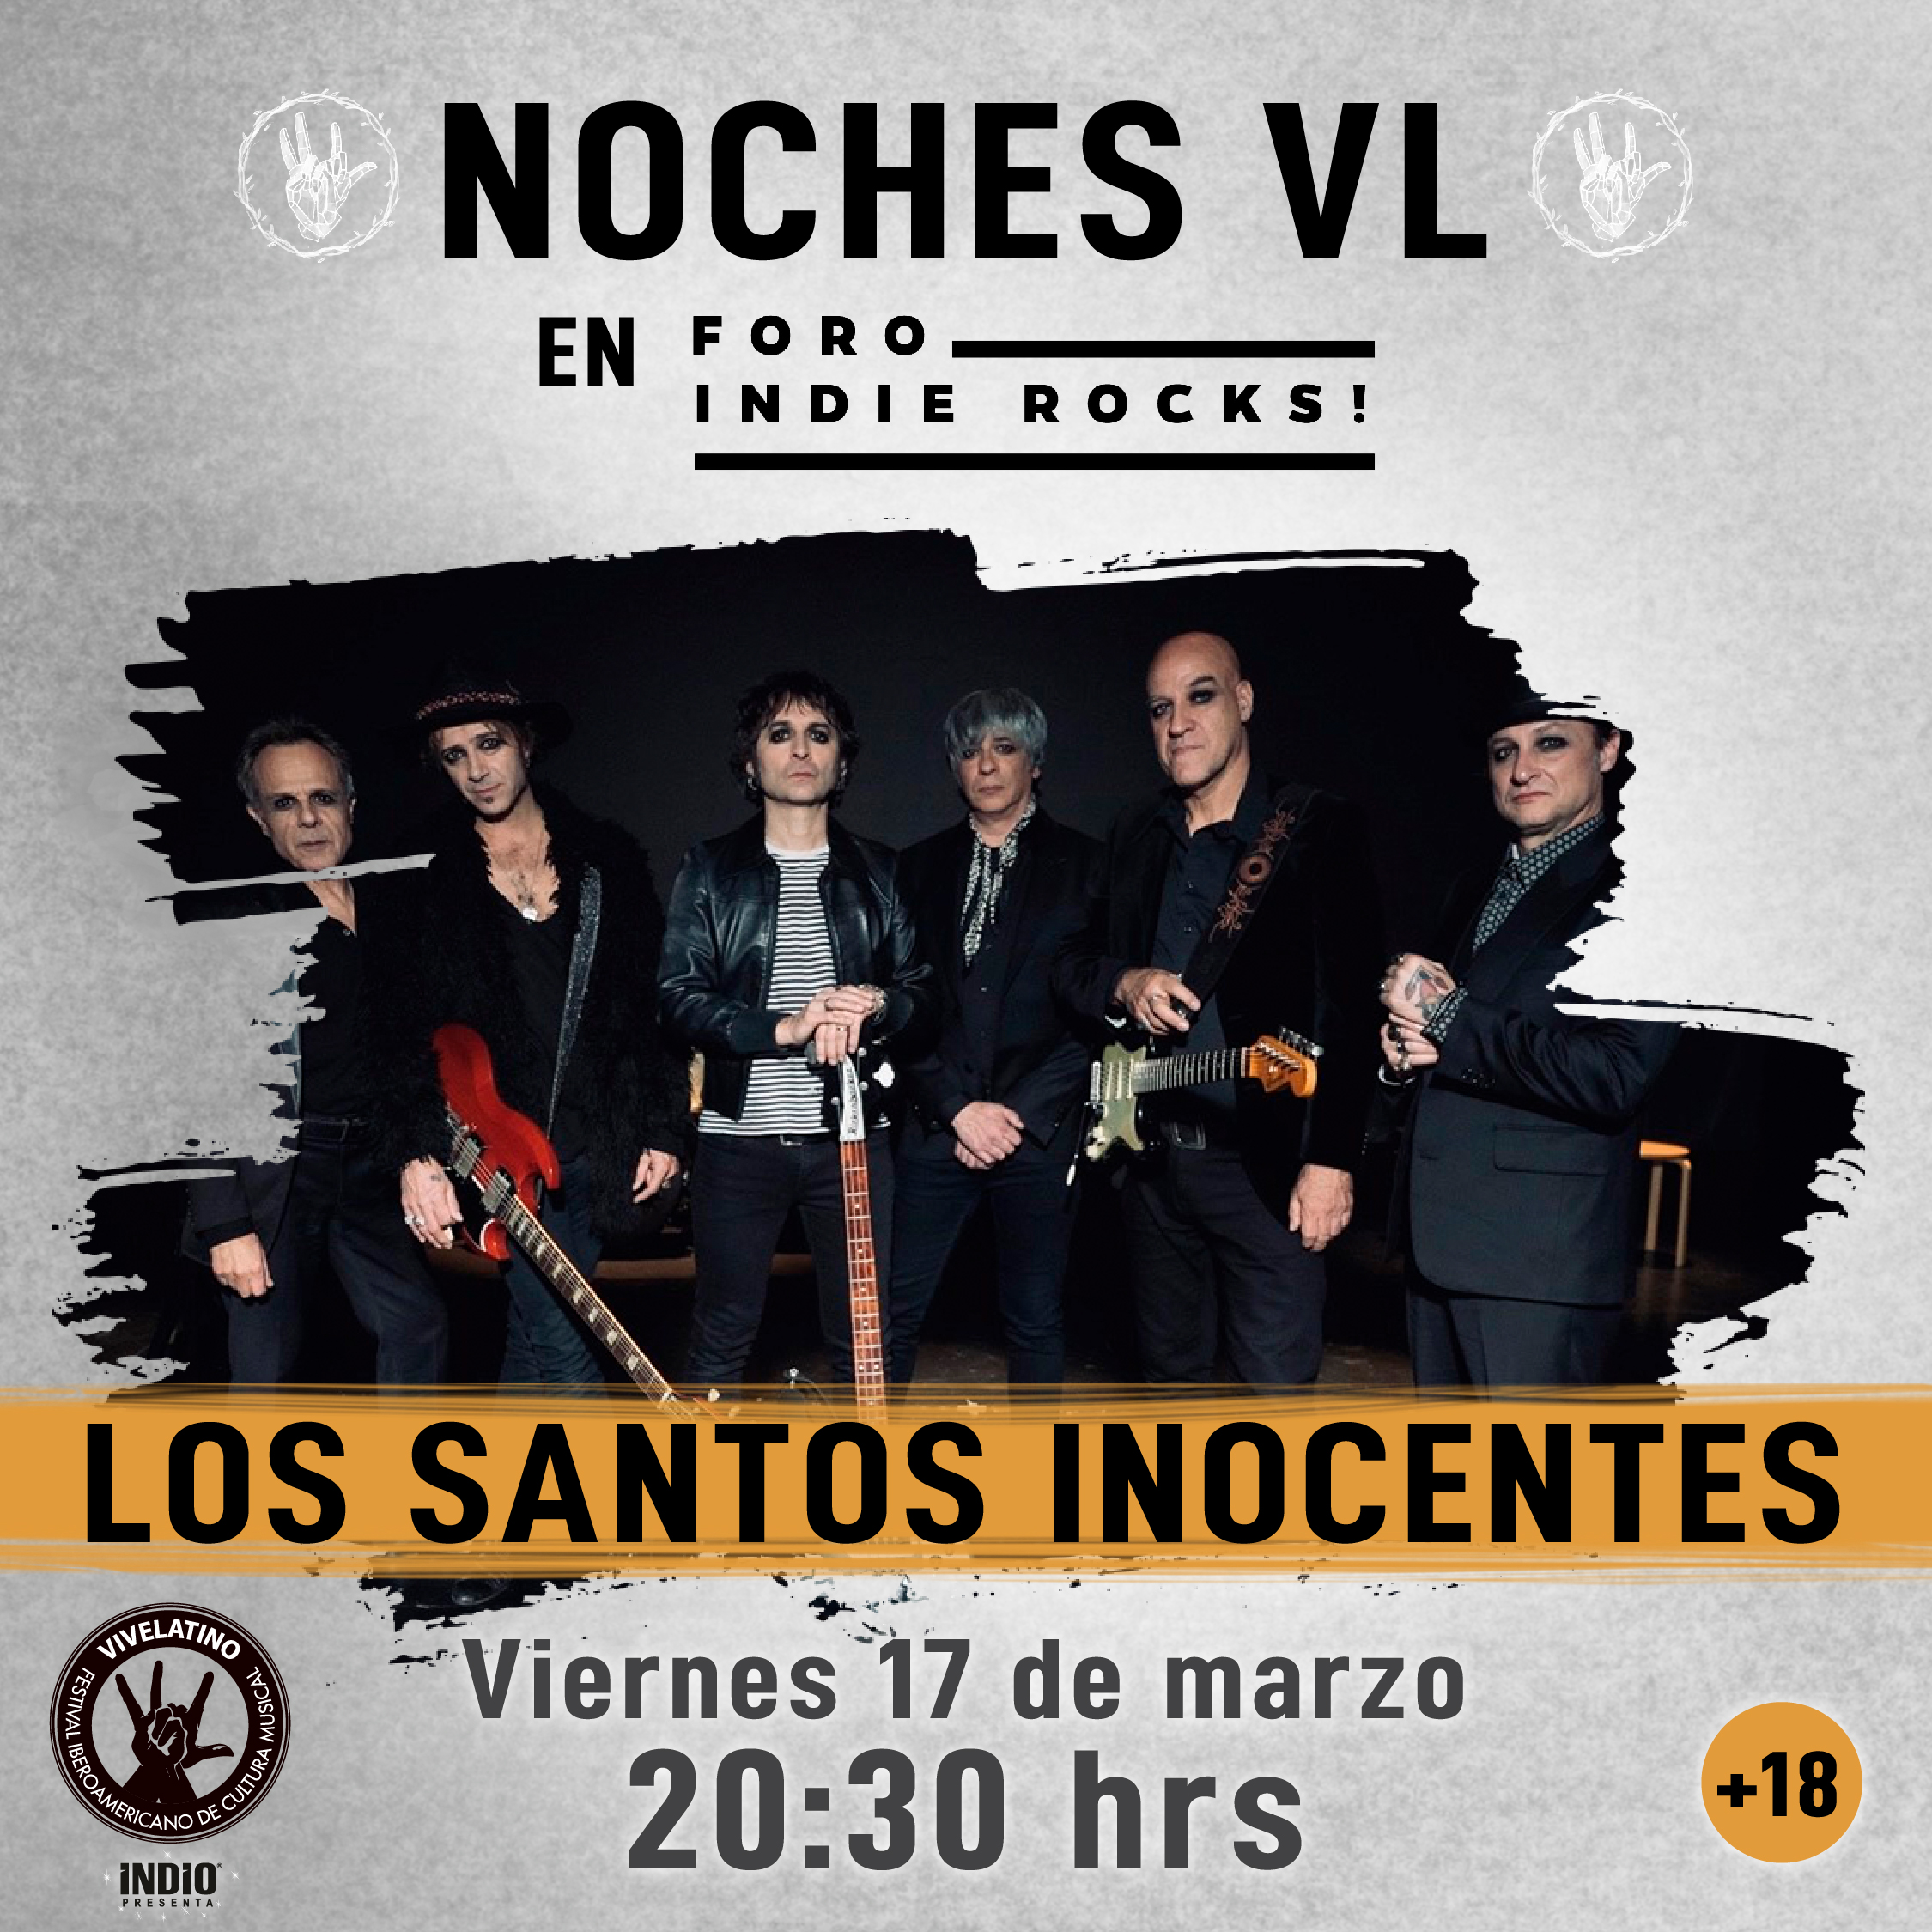 Noches VL Indie Rocks_LOS SANTOS INOCENTES_Mesa de trabajo 1